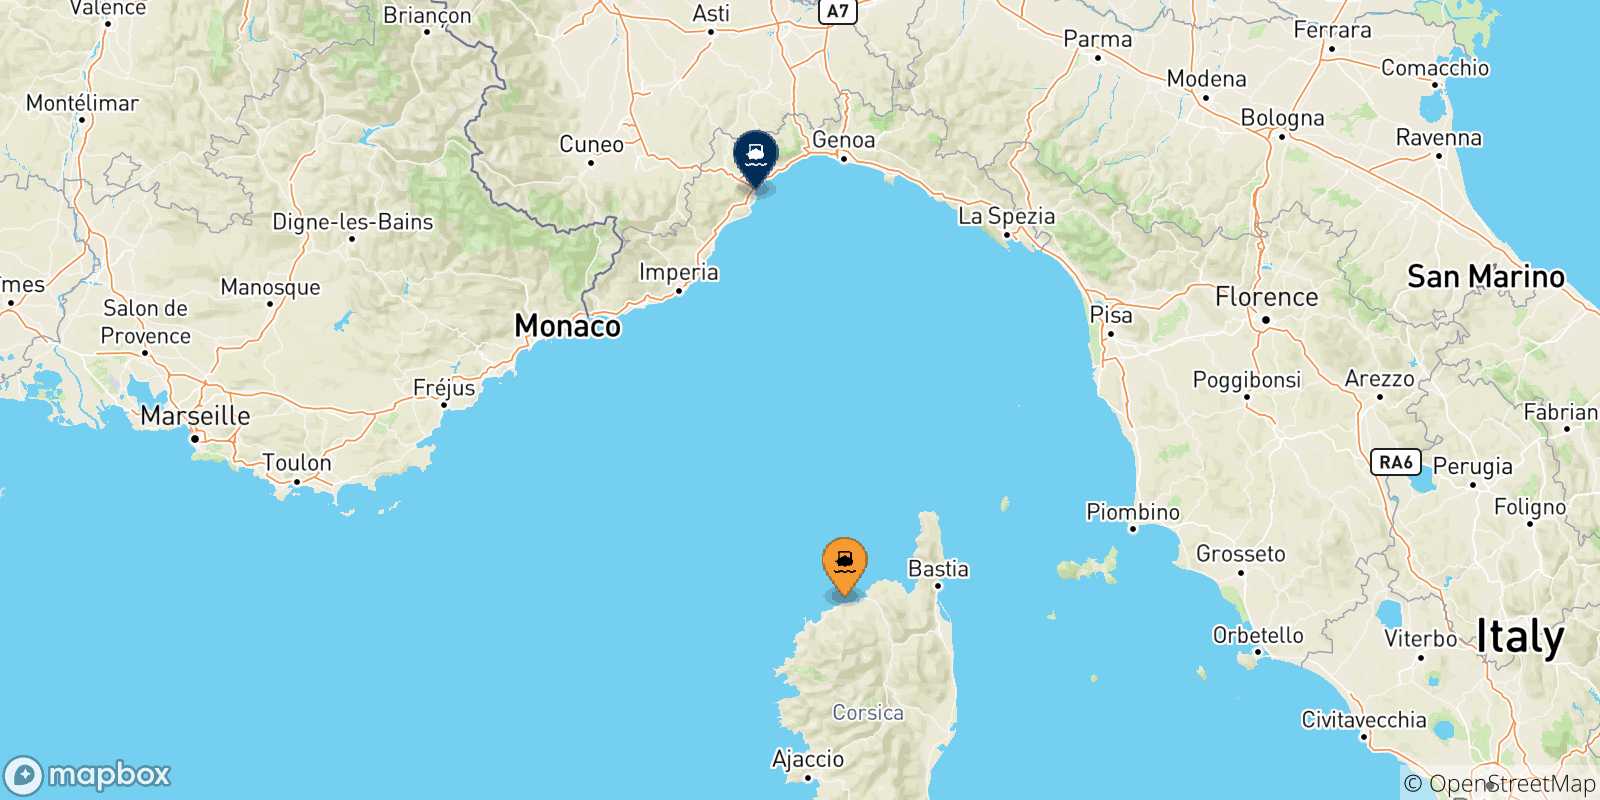 Mappa delle possibili rotte tra Calvi e l'Italia